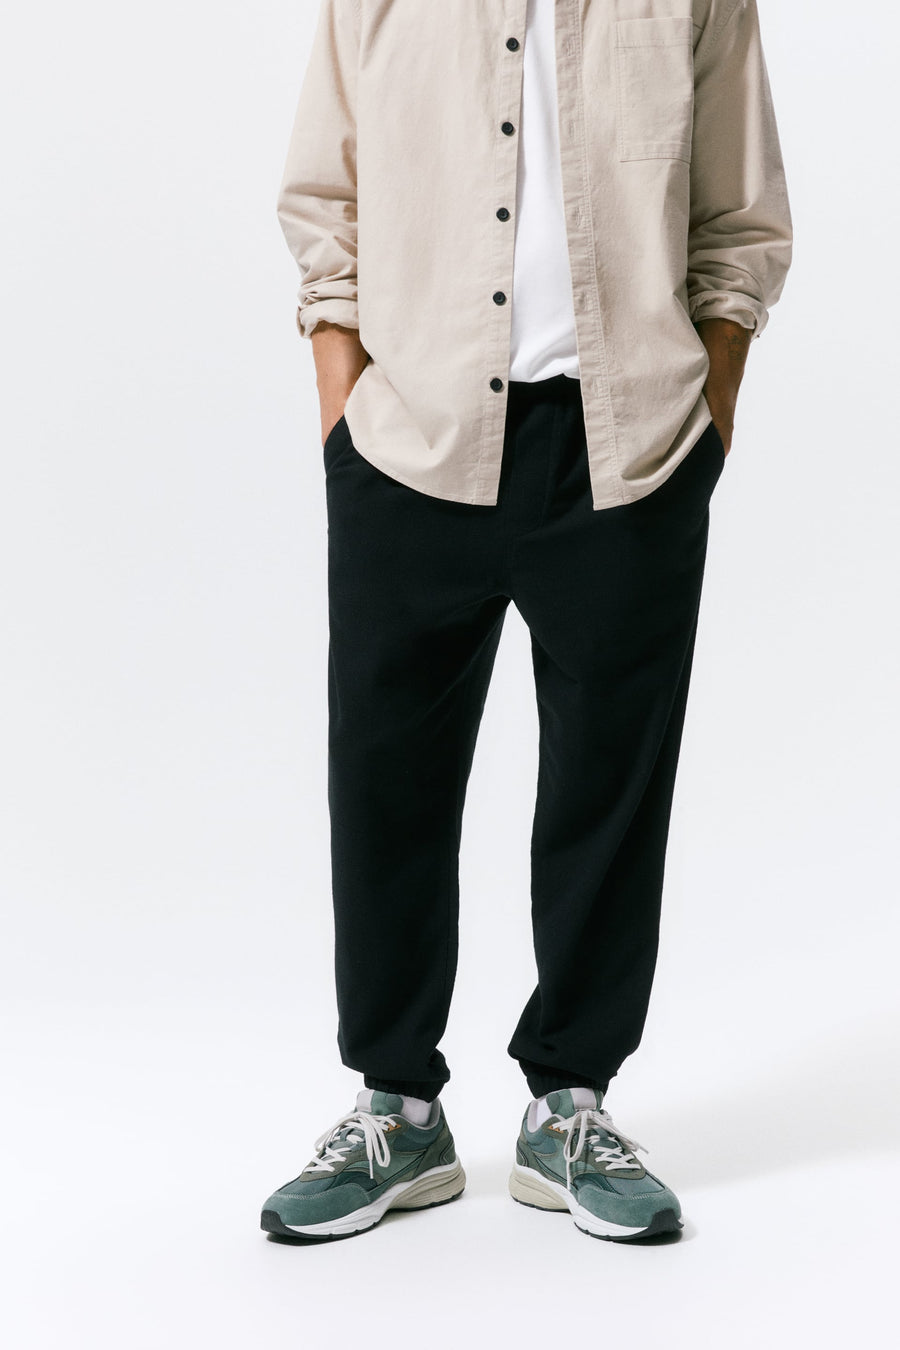 ZaraMan Knitted Jogg Cotton Trouser 0706/309/800